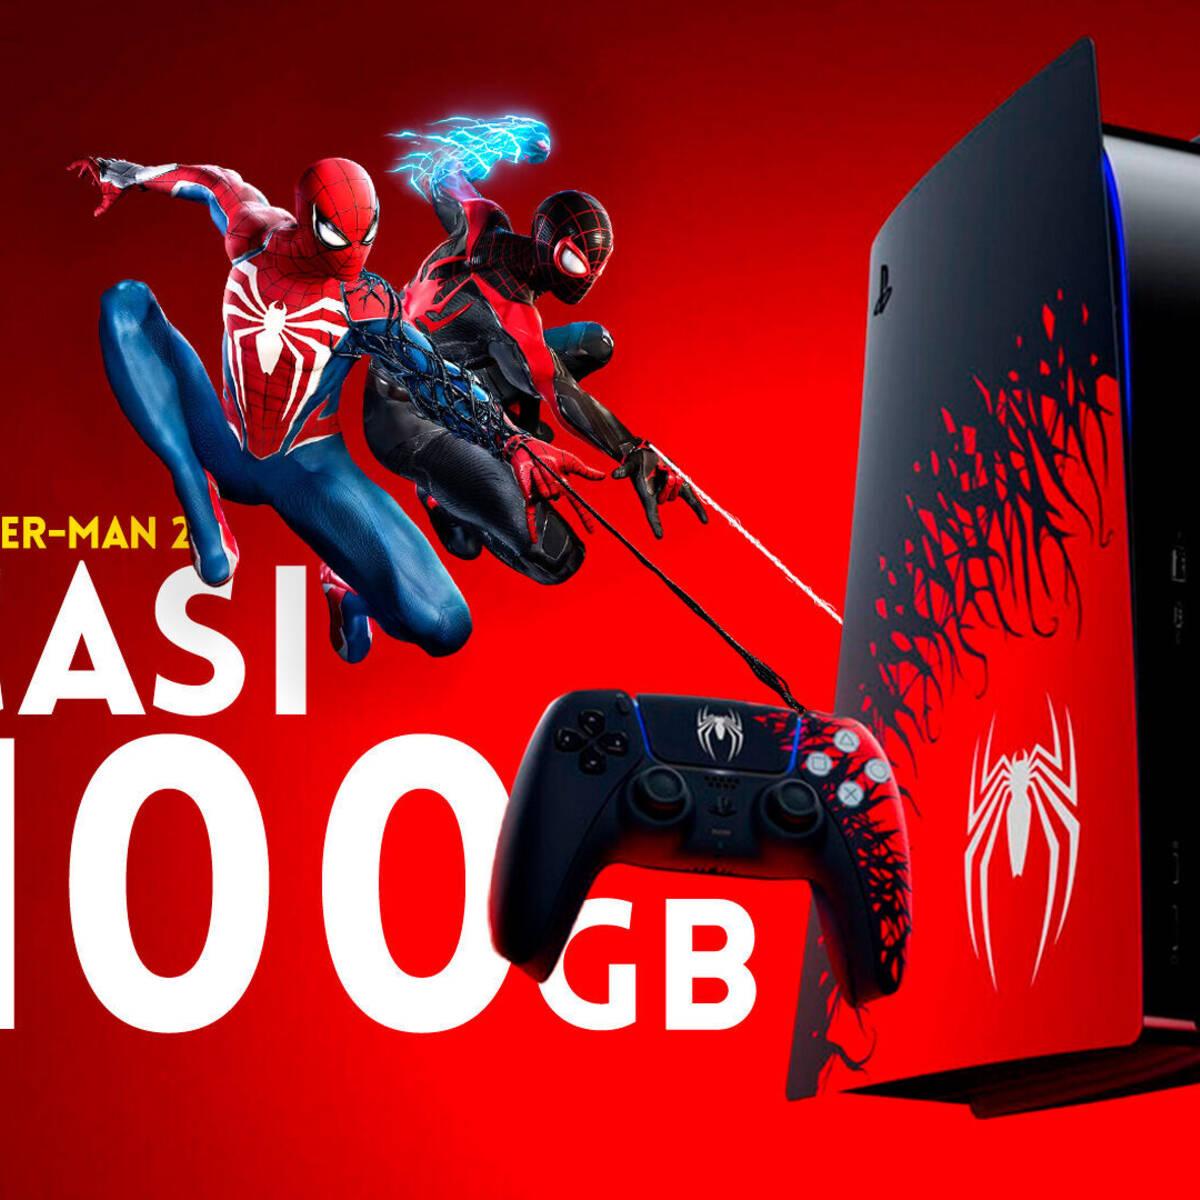 Spider-Man 2 necesitará casi 100 GB de almacenamiento en PS5 - Vandal